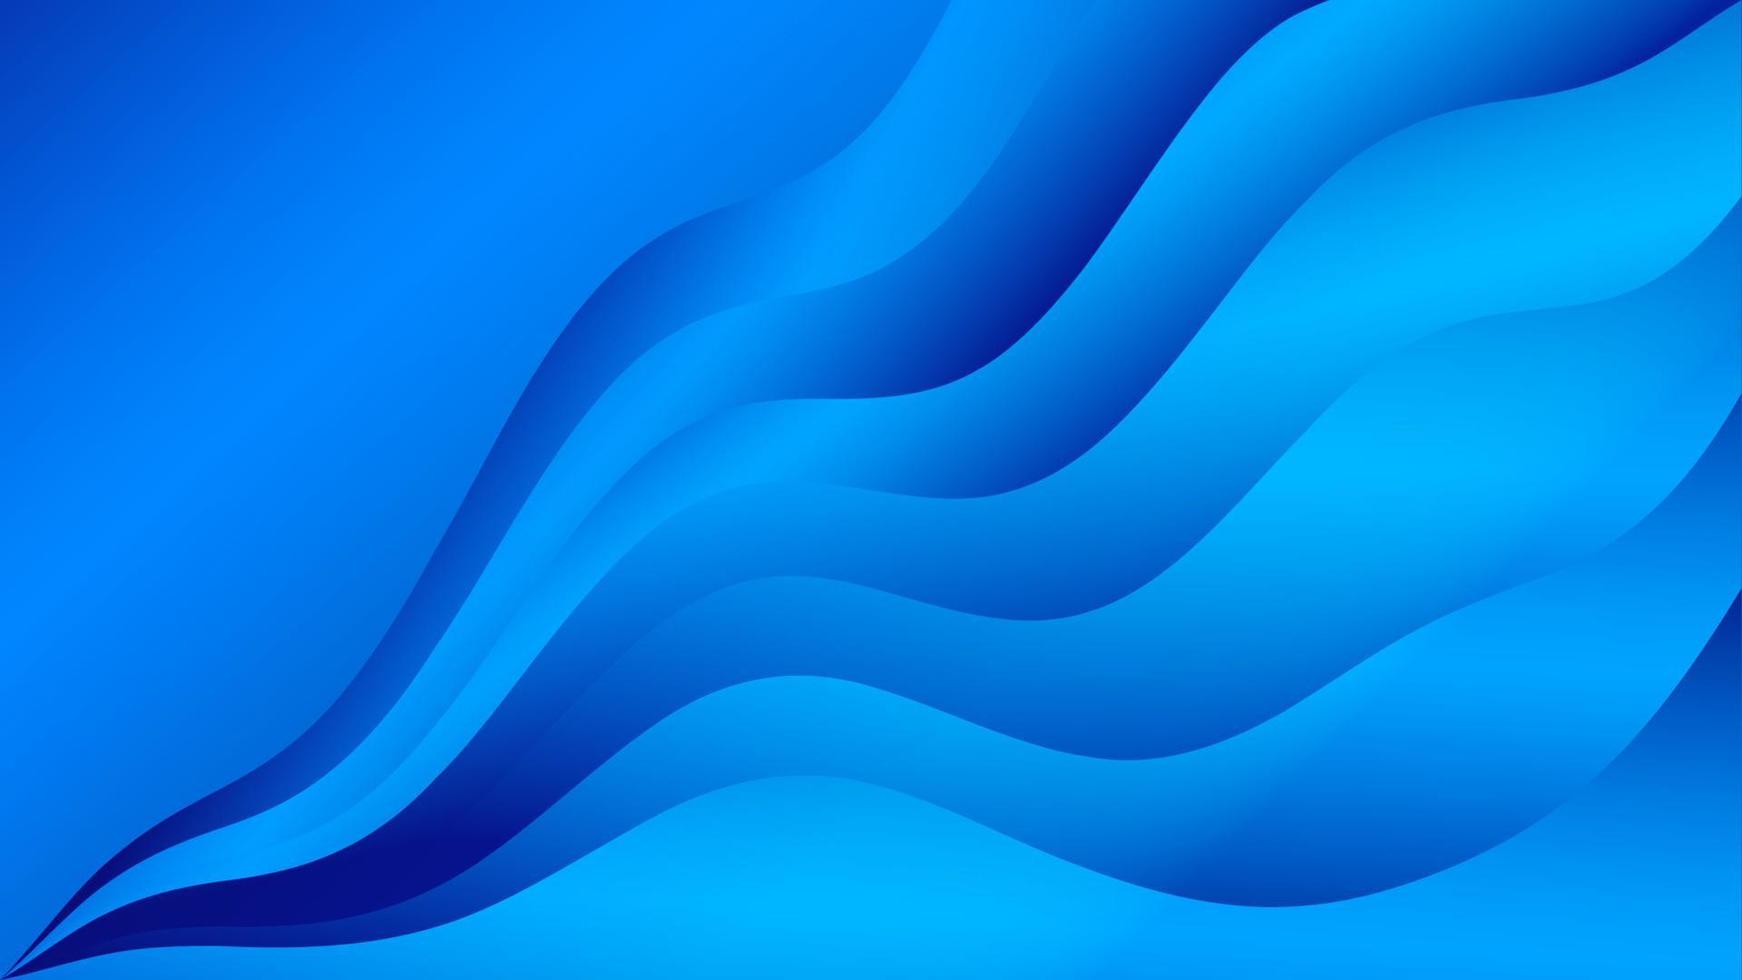 abstrakter hintergrund der blauen welle, webhintergrund, blaue textur, bannerdesign, kreatives coverdesign, hintergrund, minimaler hintergrund, vektorillustration vektor